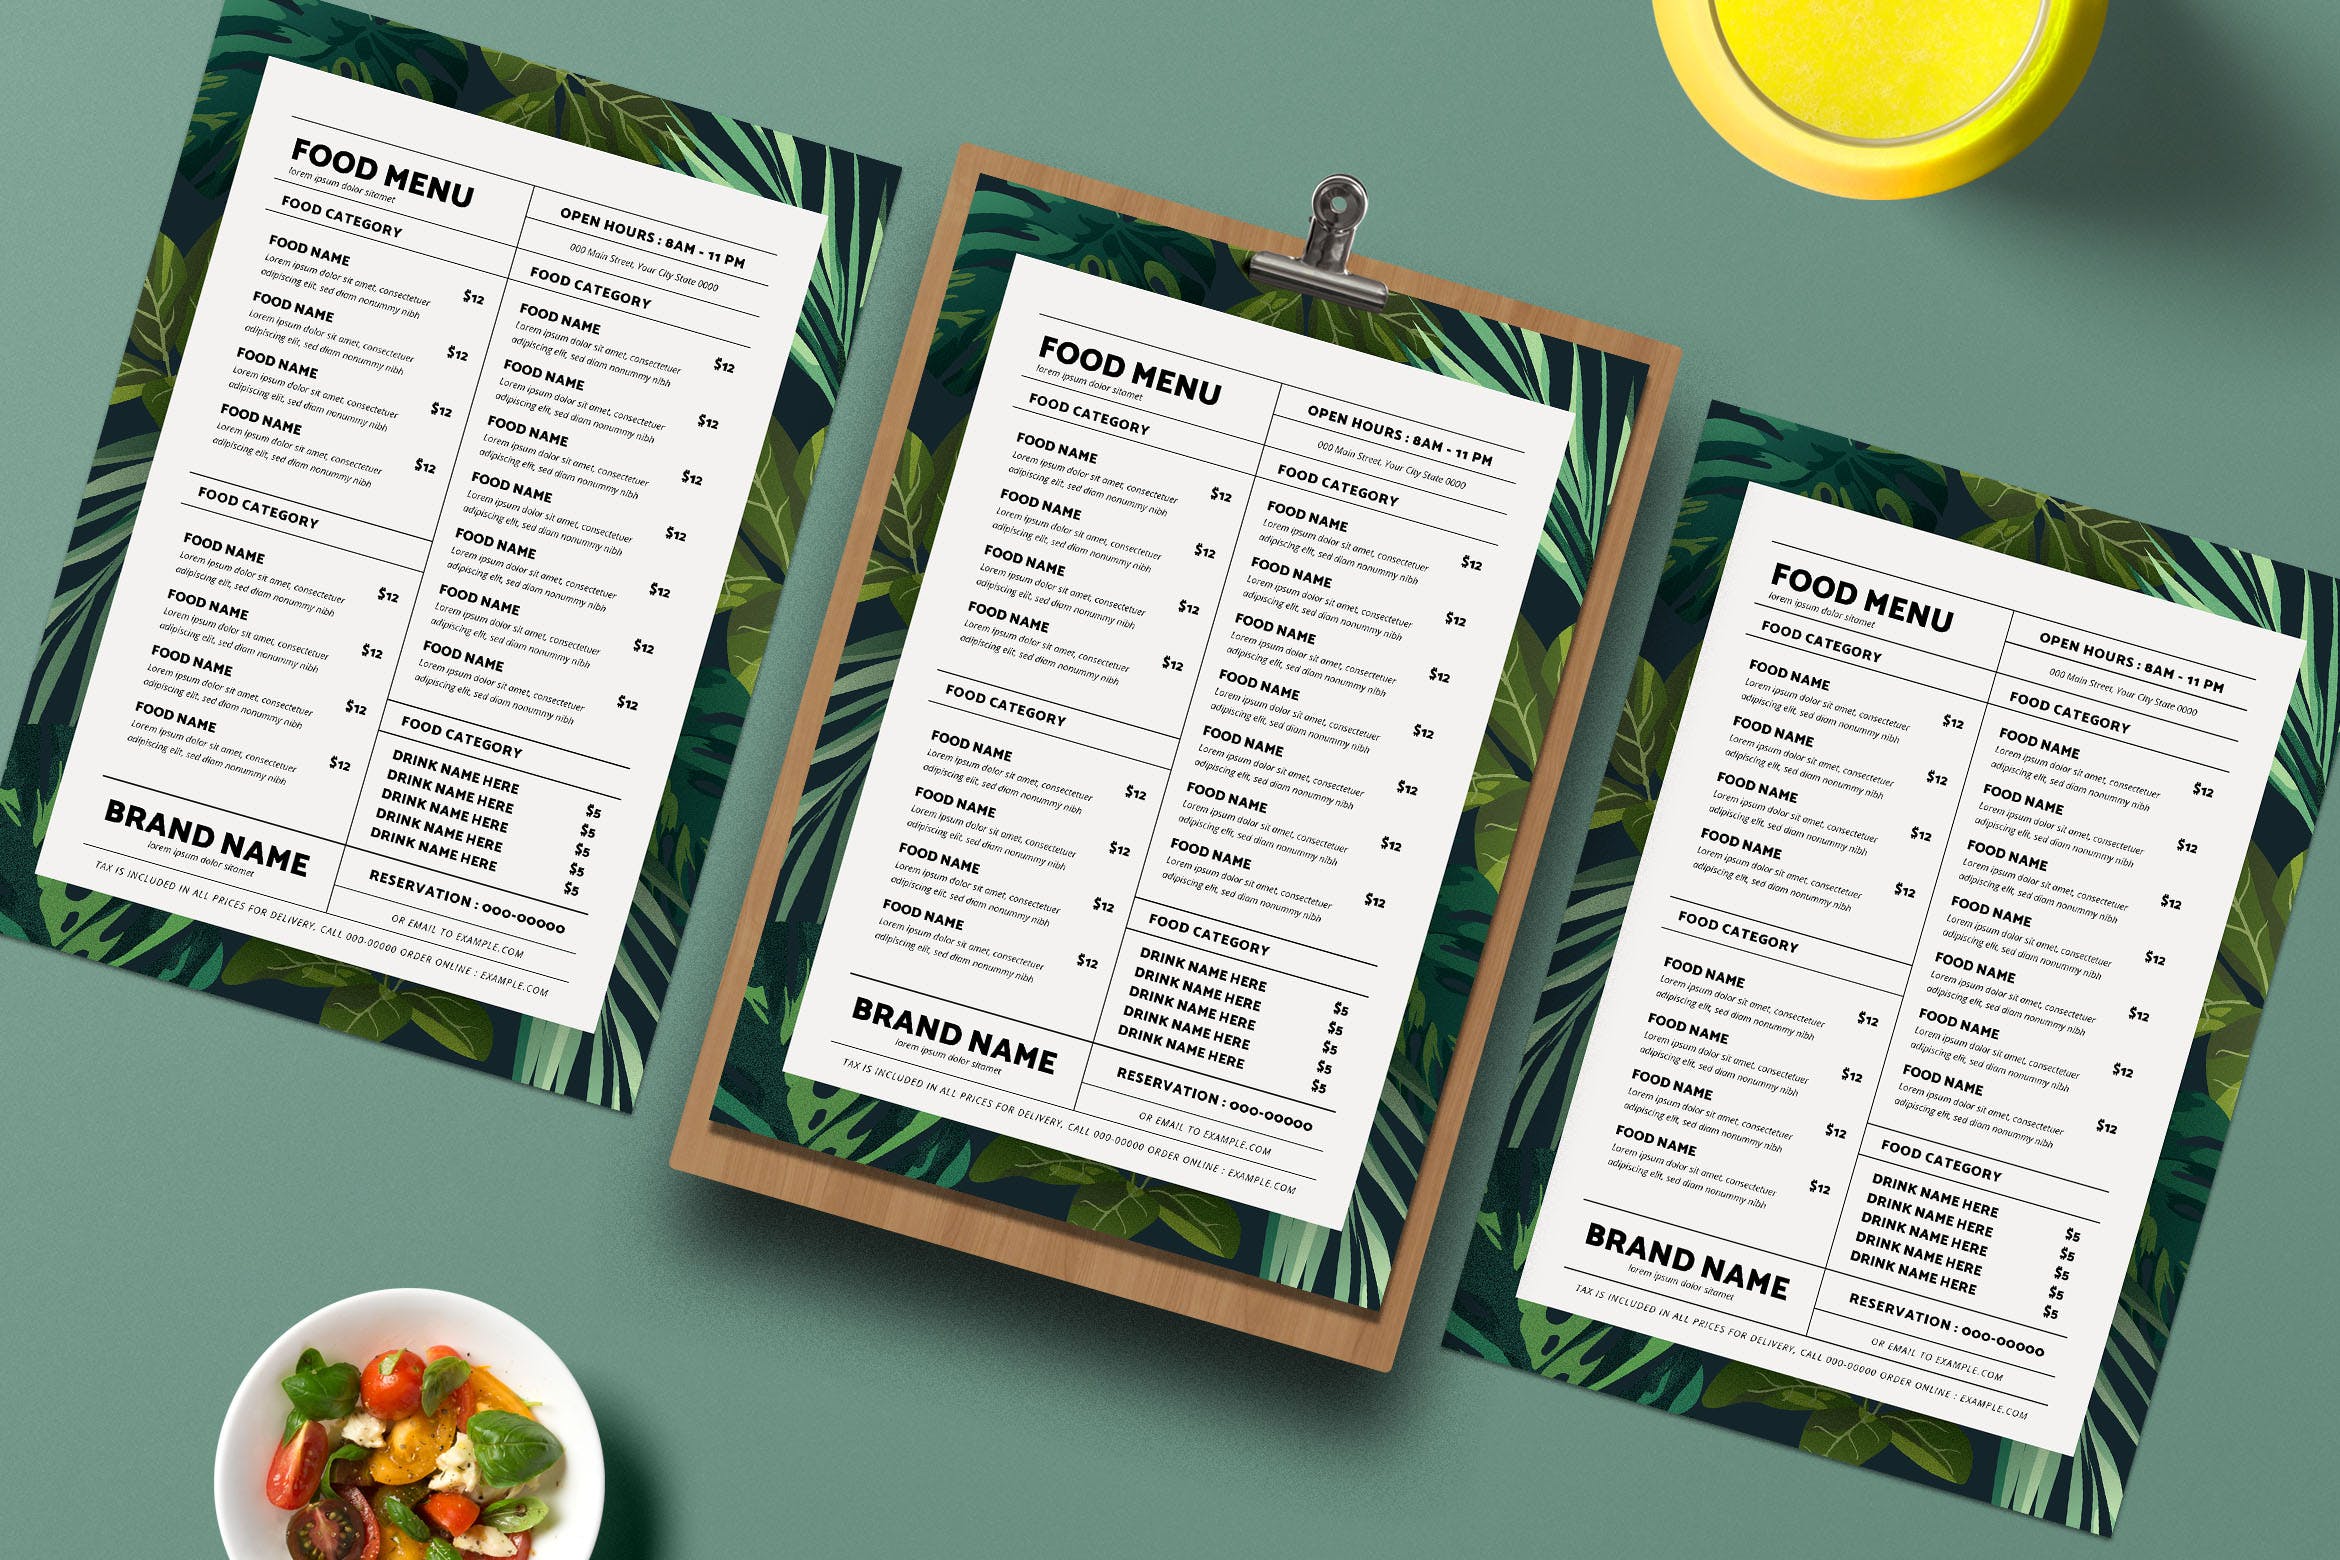 热带主题餐厅美食菜单设计模板 Tropical Food Menu插图